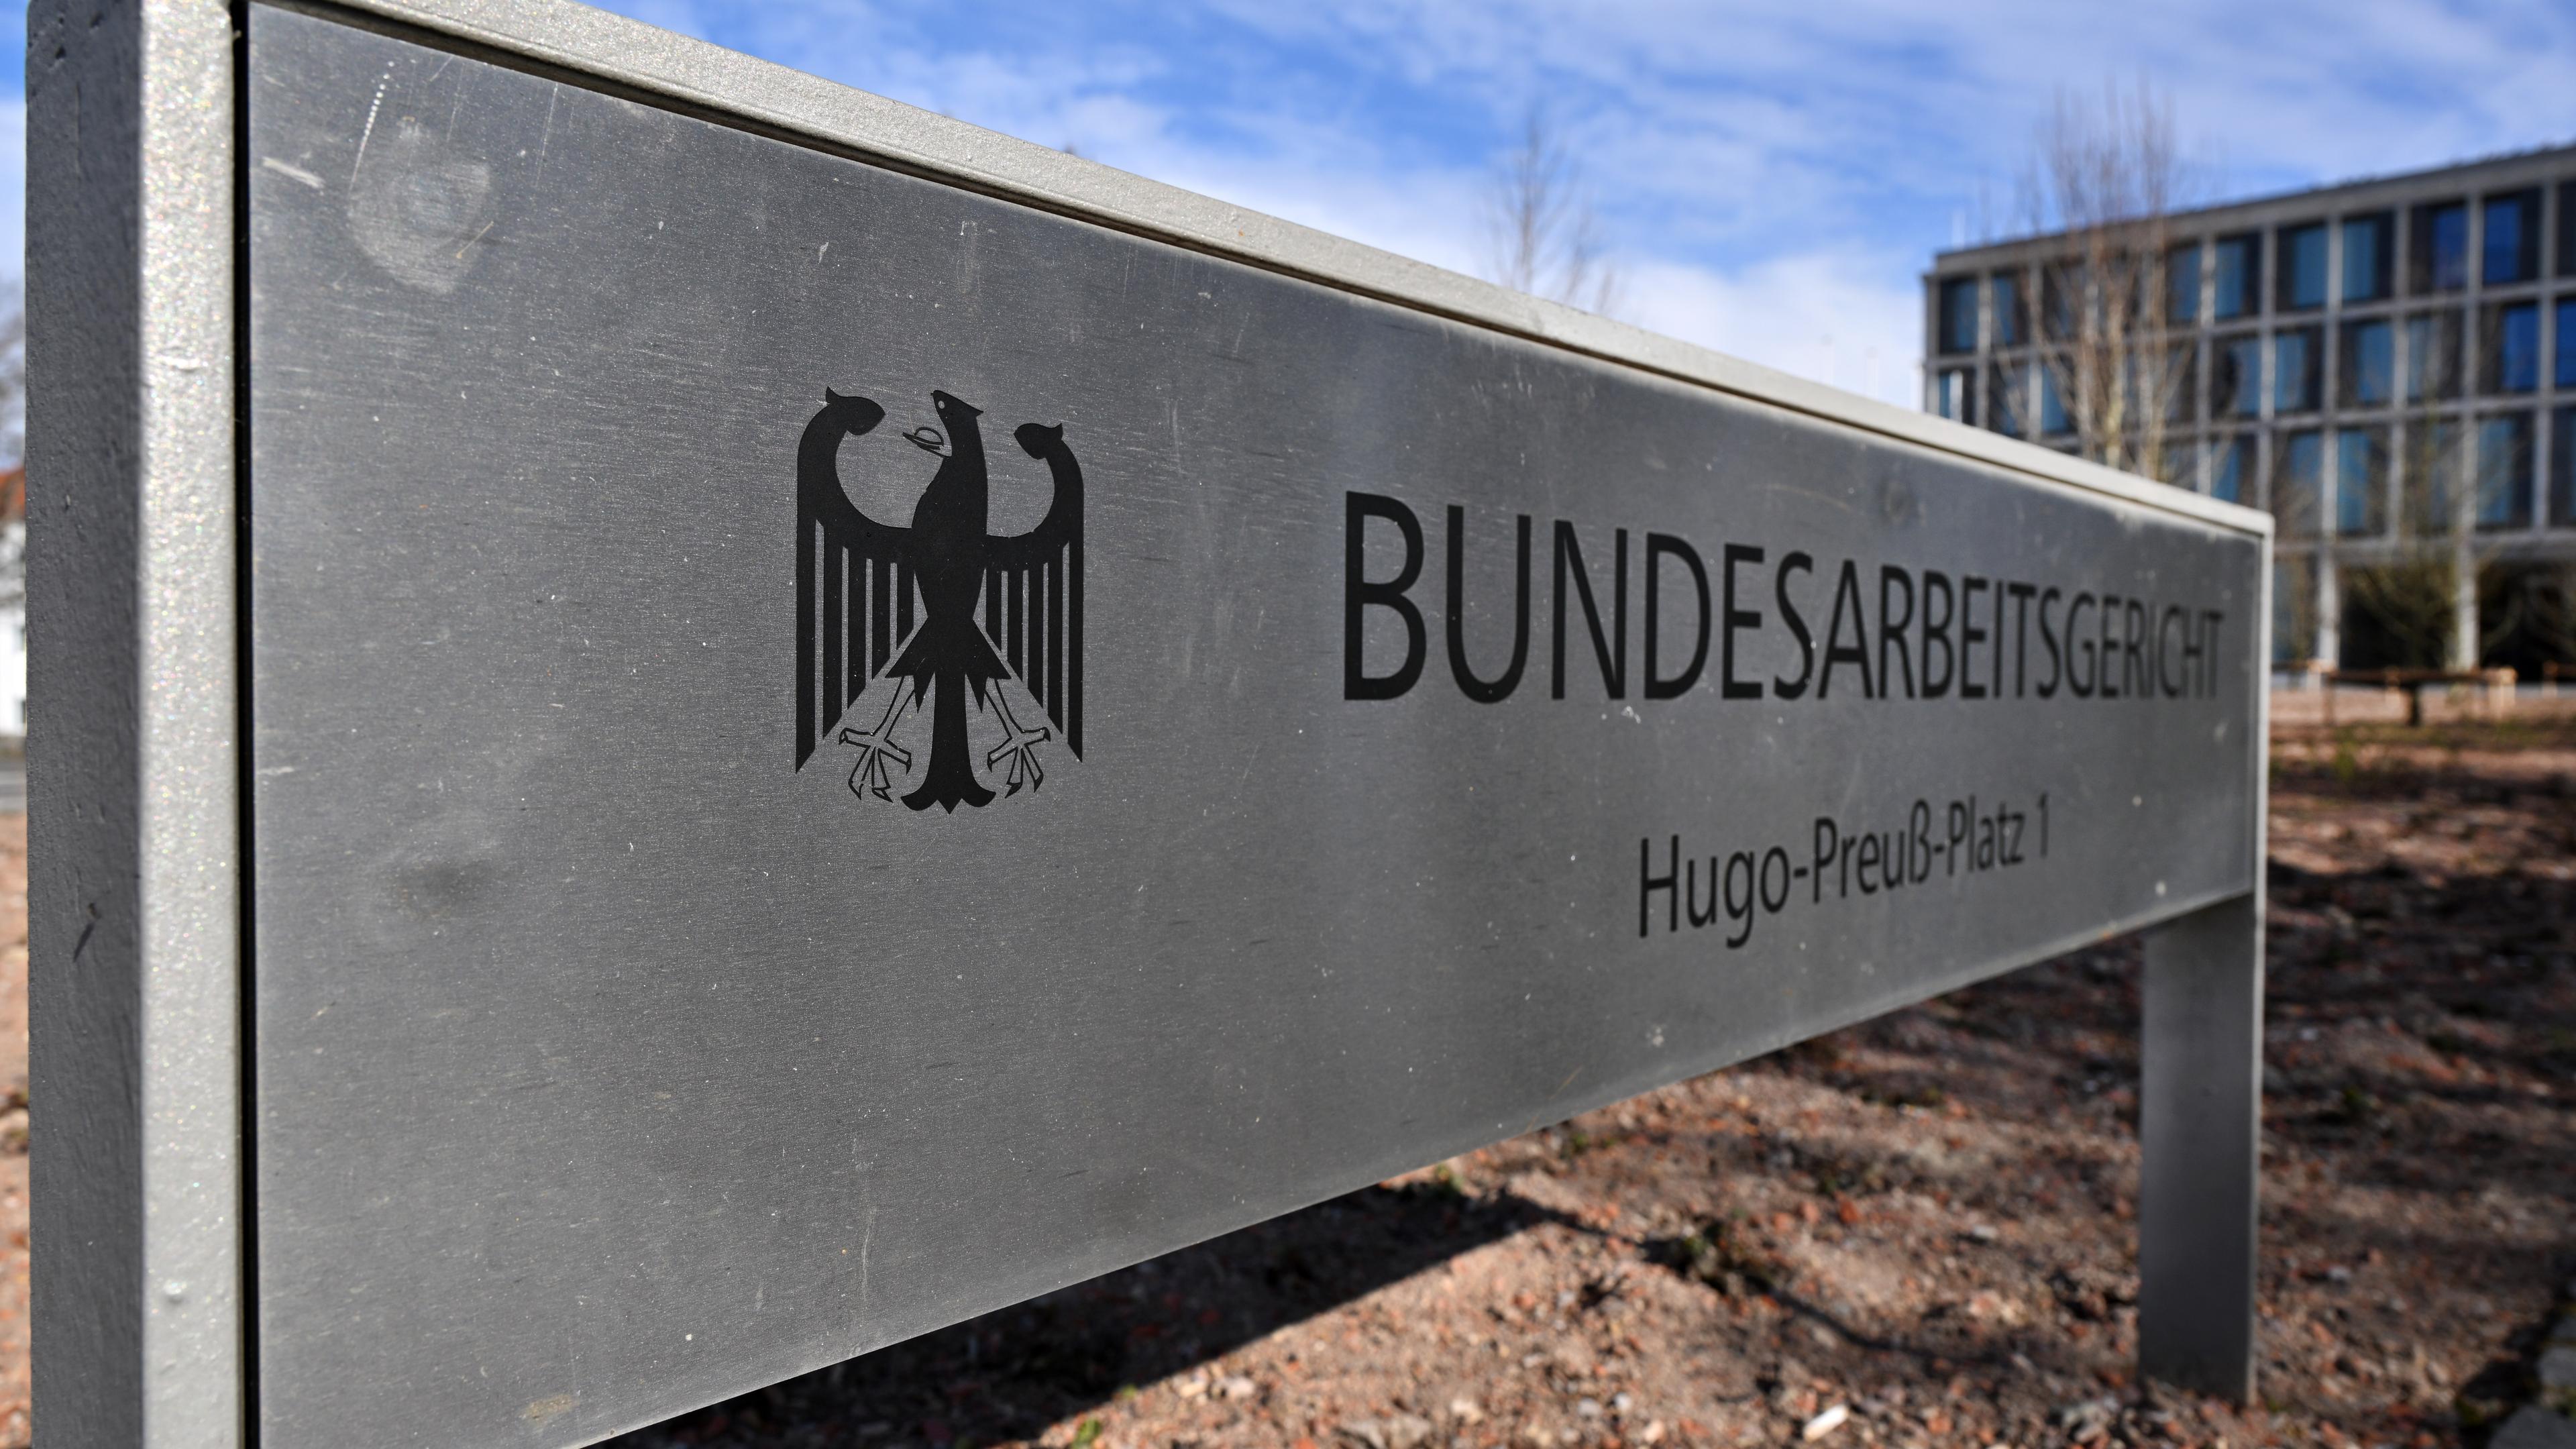  «Bundesarbeitsgericht» steht auf dem Schild am Eingang zum höchsten deutschen Arbeitsgericht.